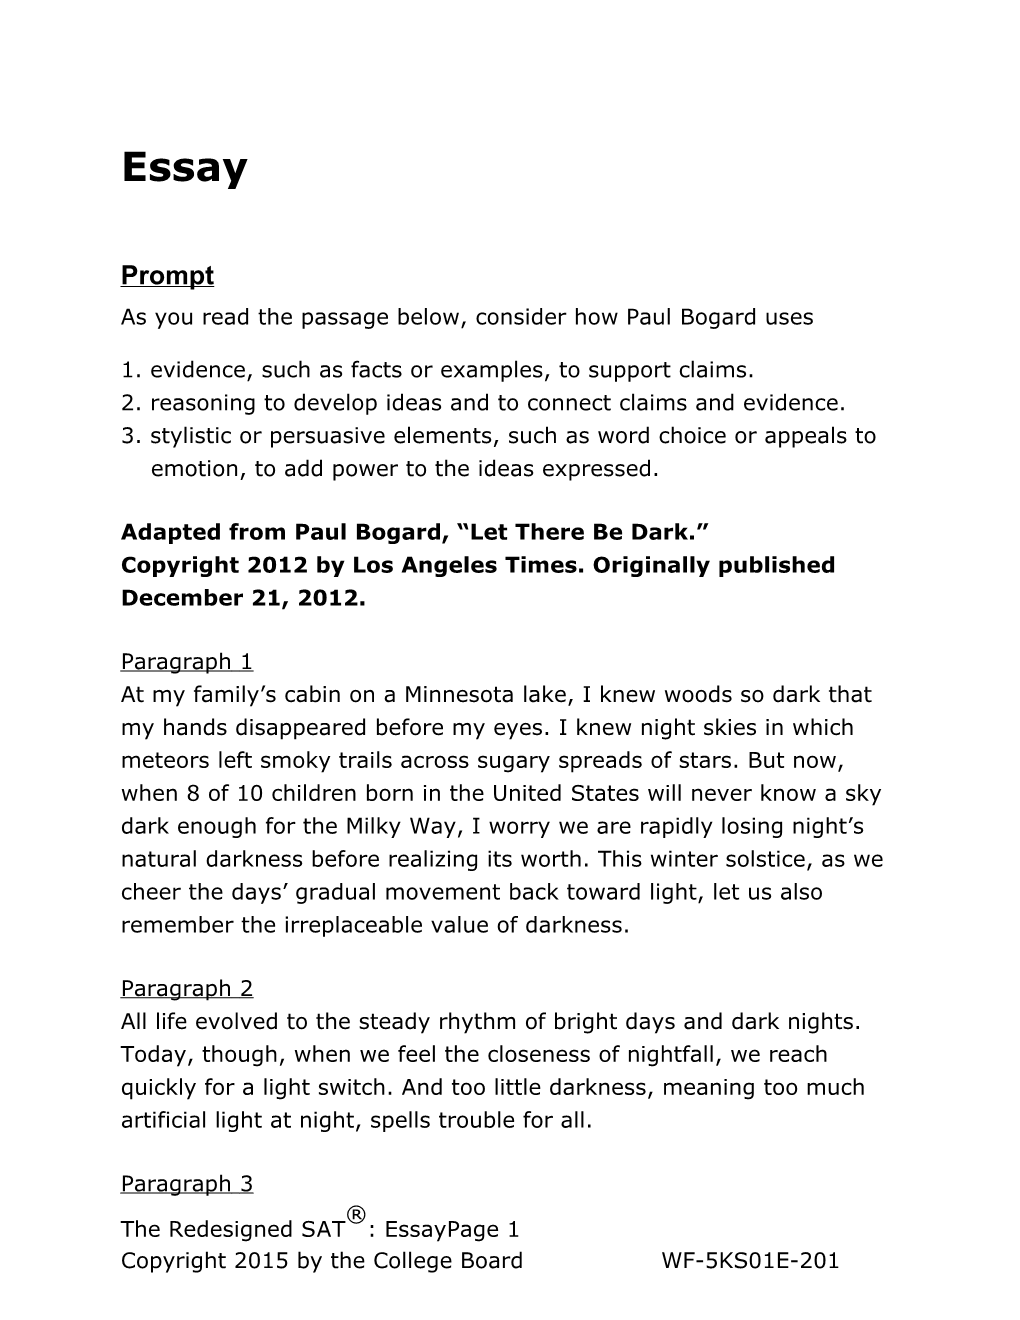 Essay Sample Material